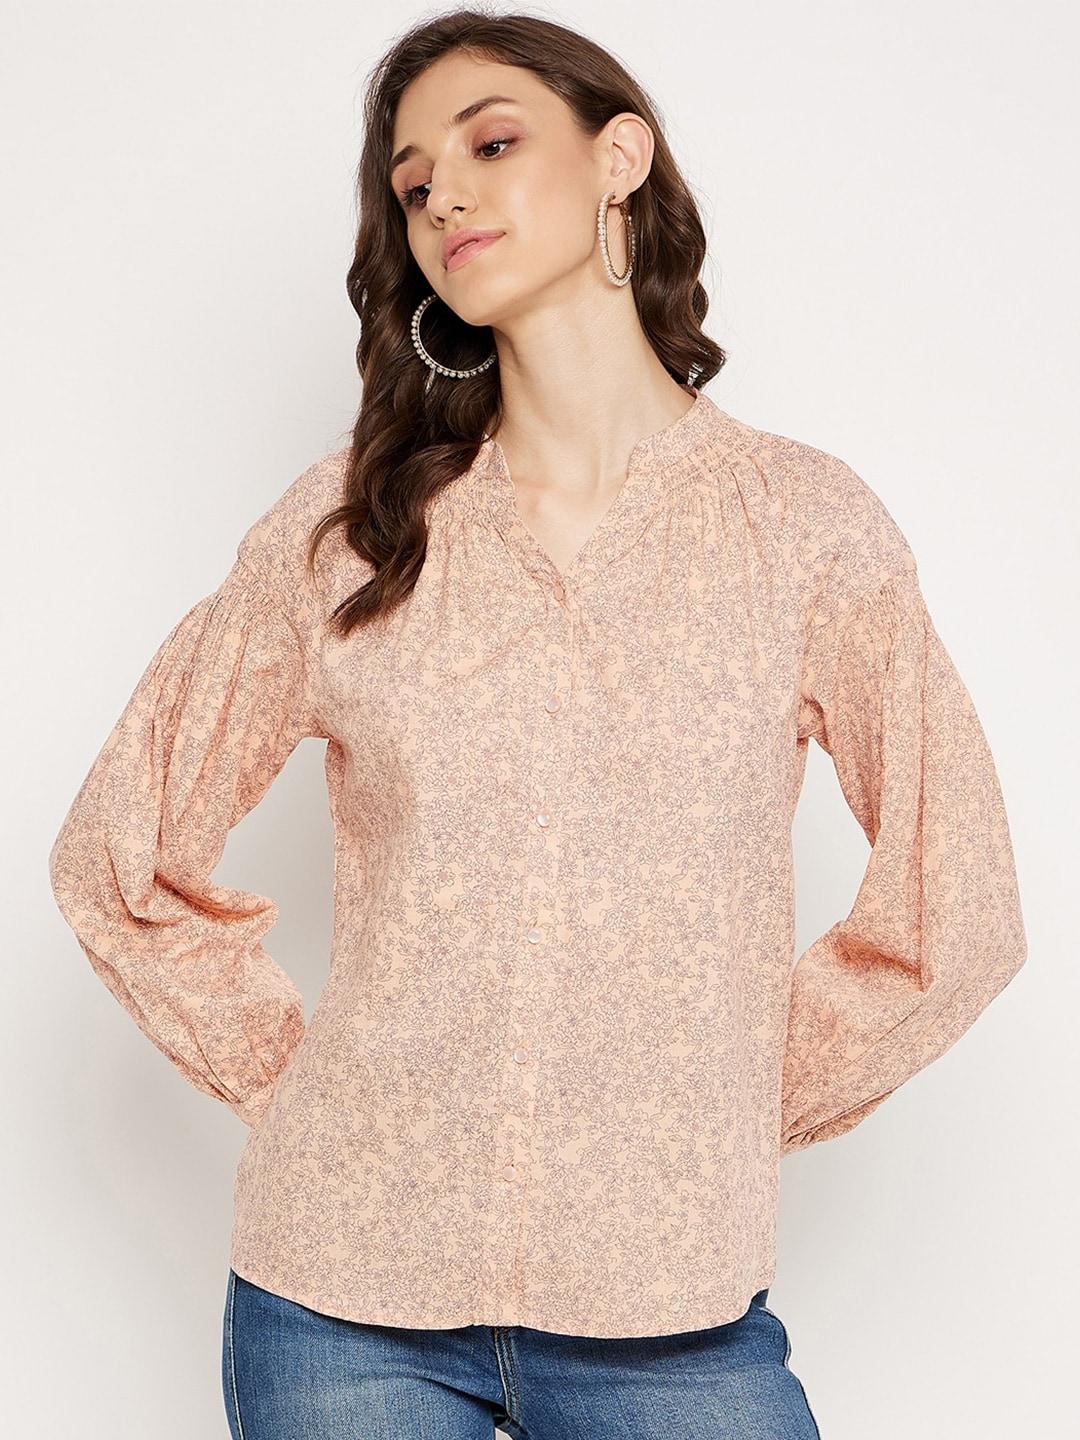 madame-floral-printed-mandarin-collar-smocking-shirt-style-top